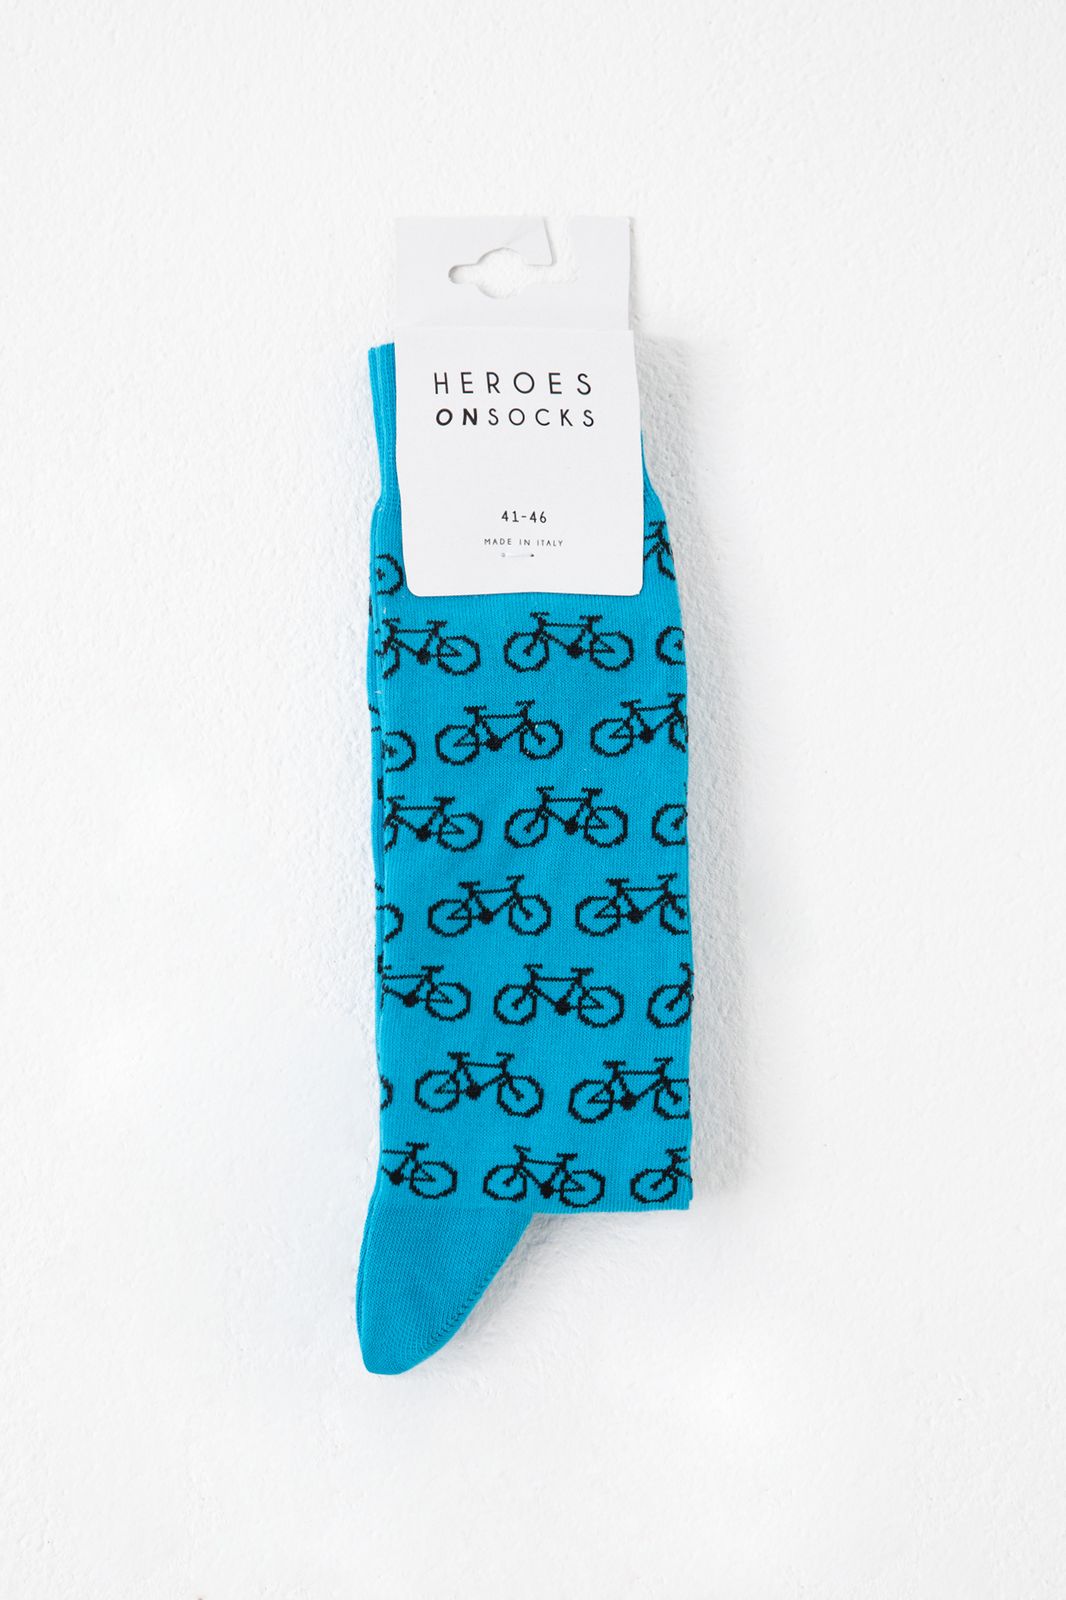 Heroes on Socks Socken mit Fahrrad-Print - hellblau